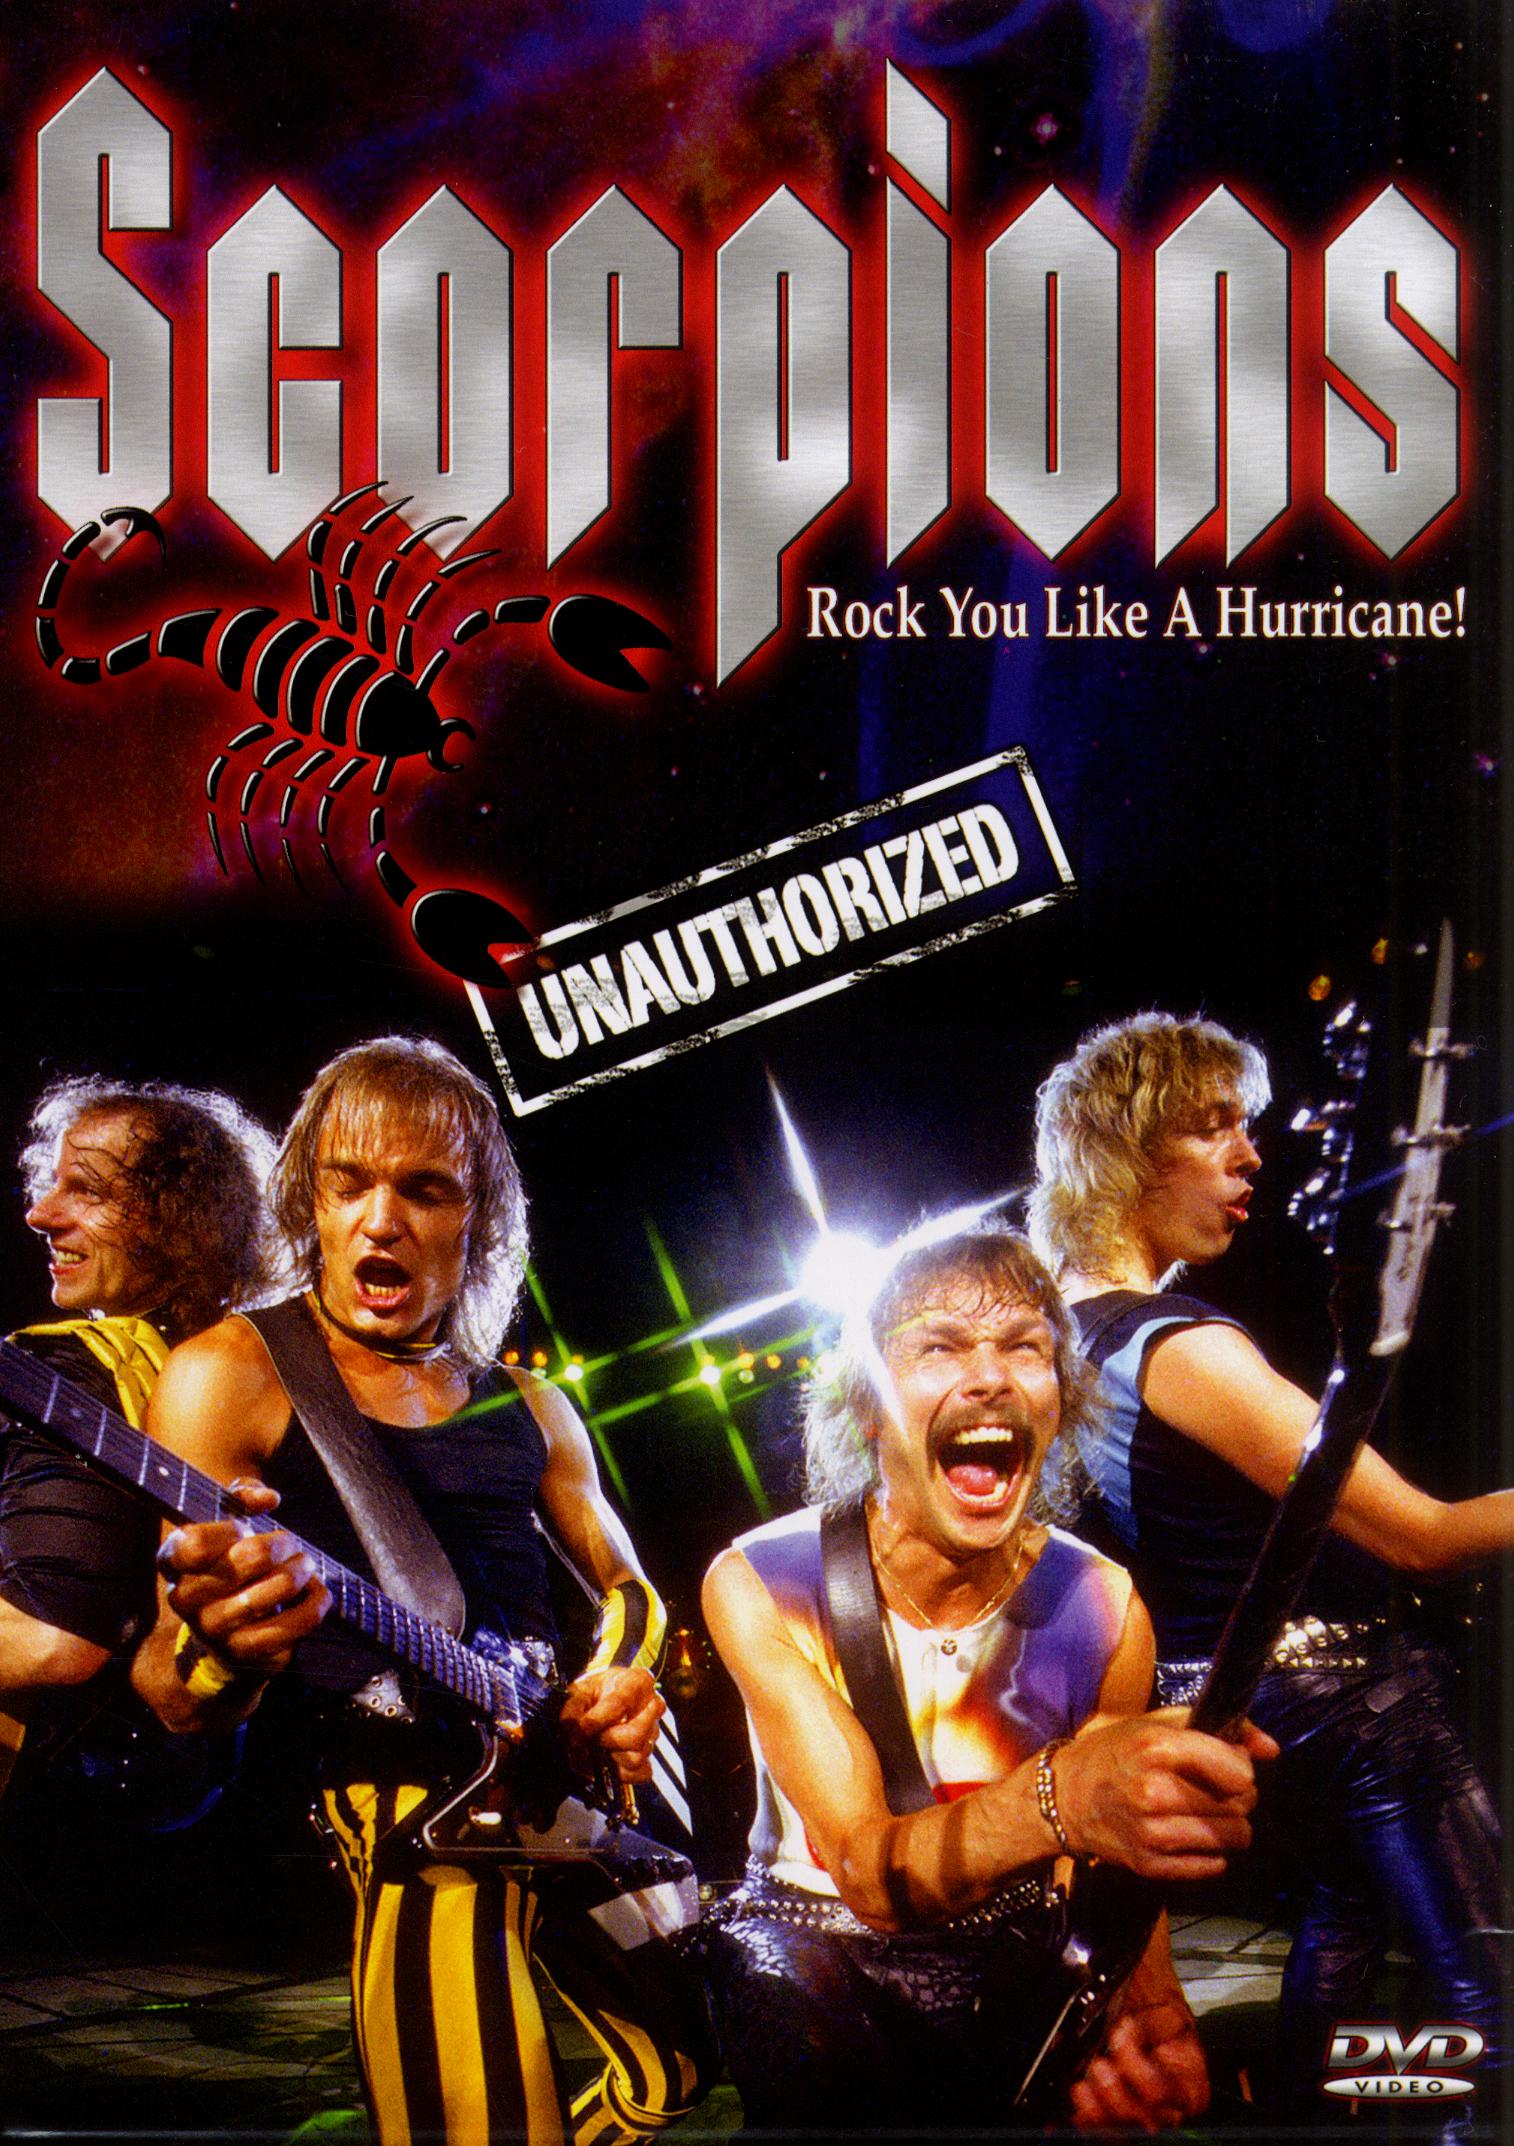 Scorpions like hurricane. Scorpions. Рок 2003 диск. Скорпион 1994. Scorpions Rock you like a Hurricane обложка.